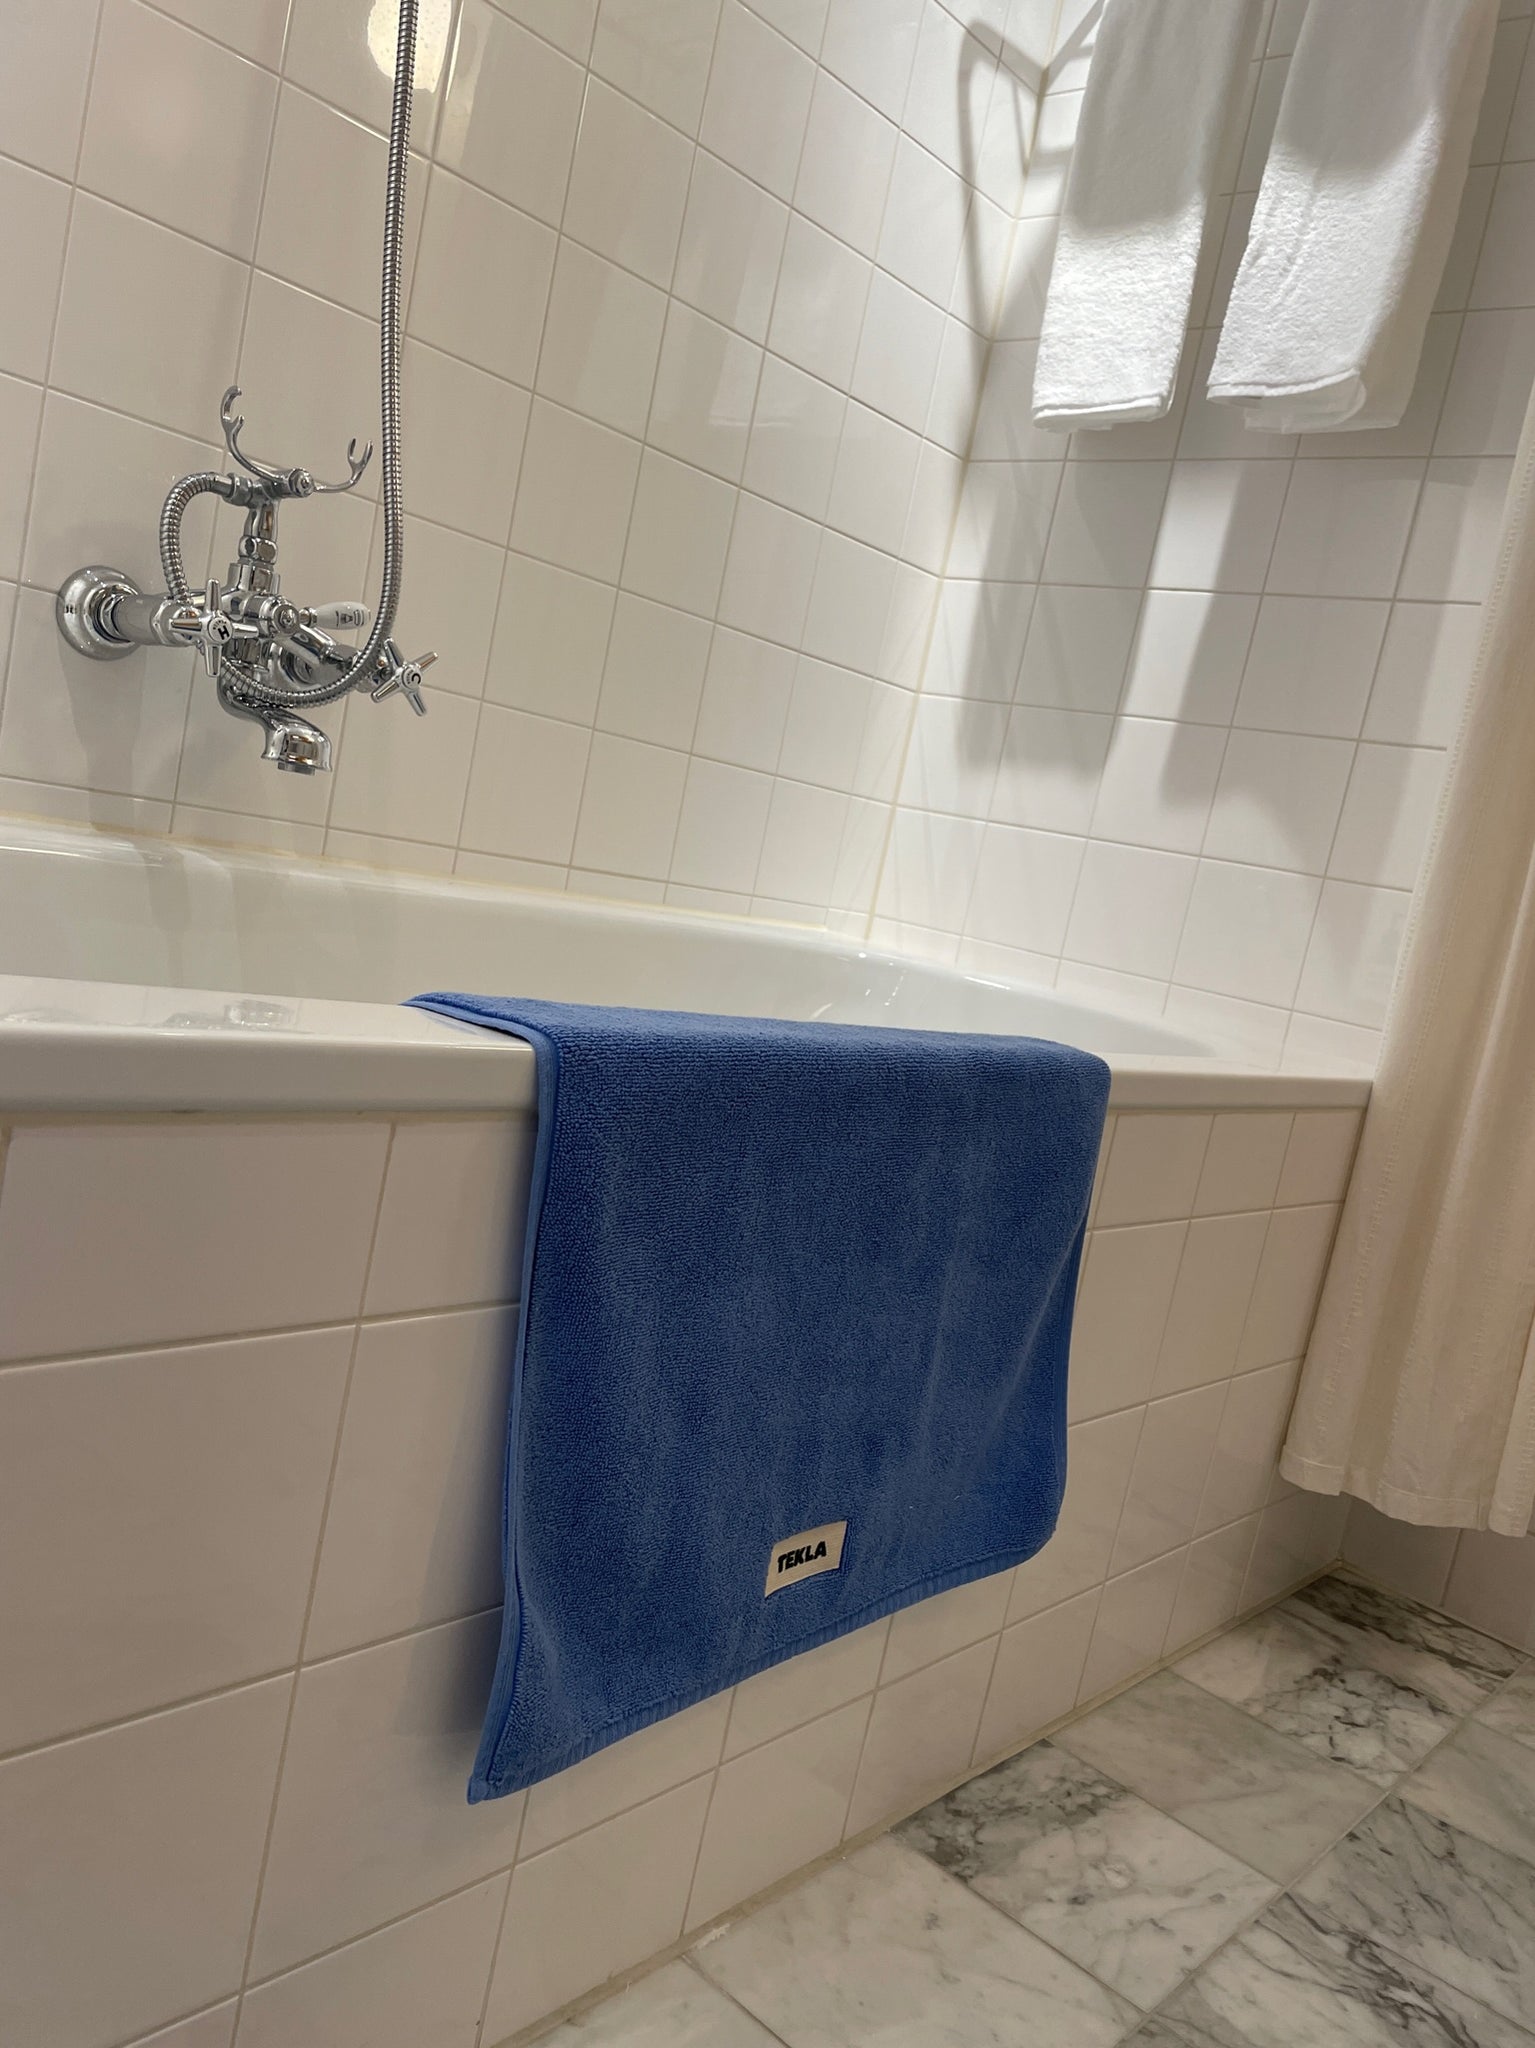 Bath Mat, Clear Blue